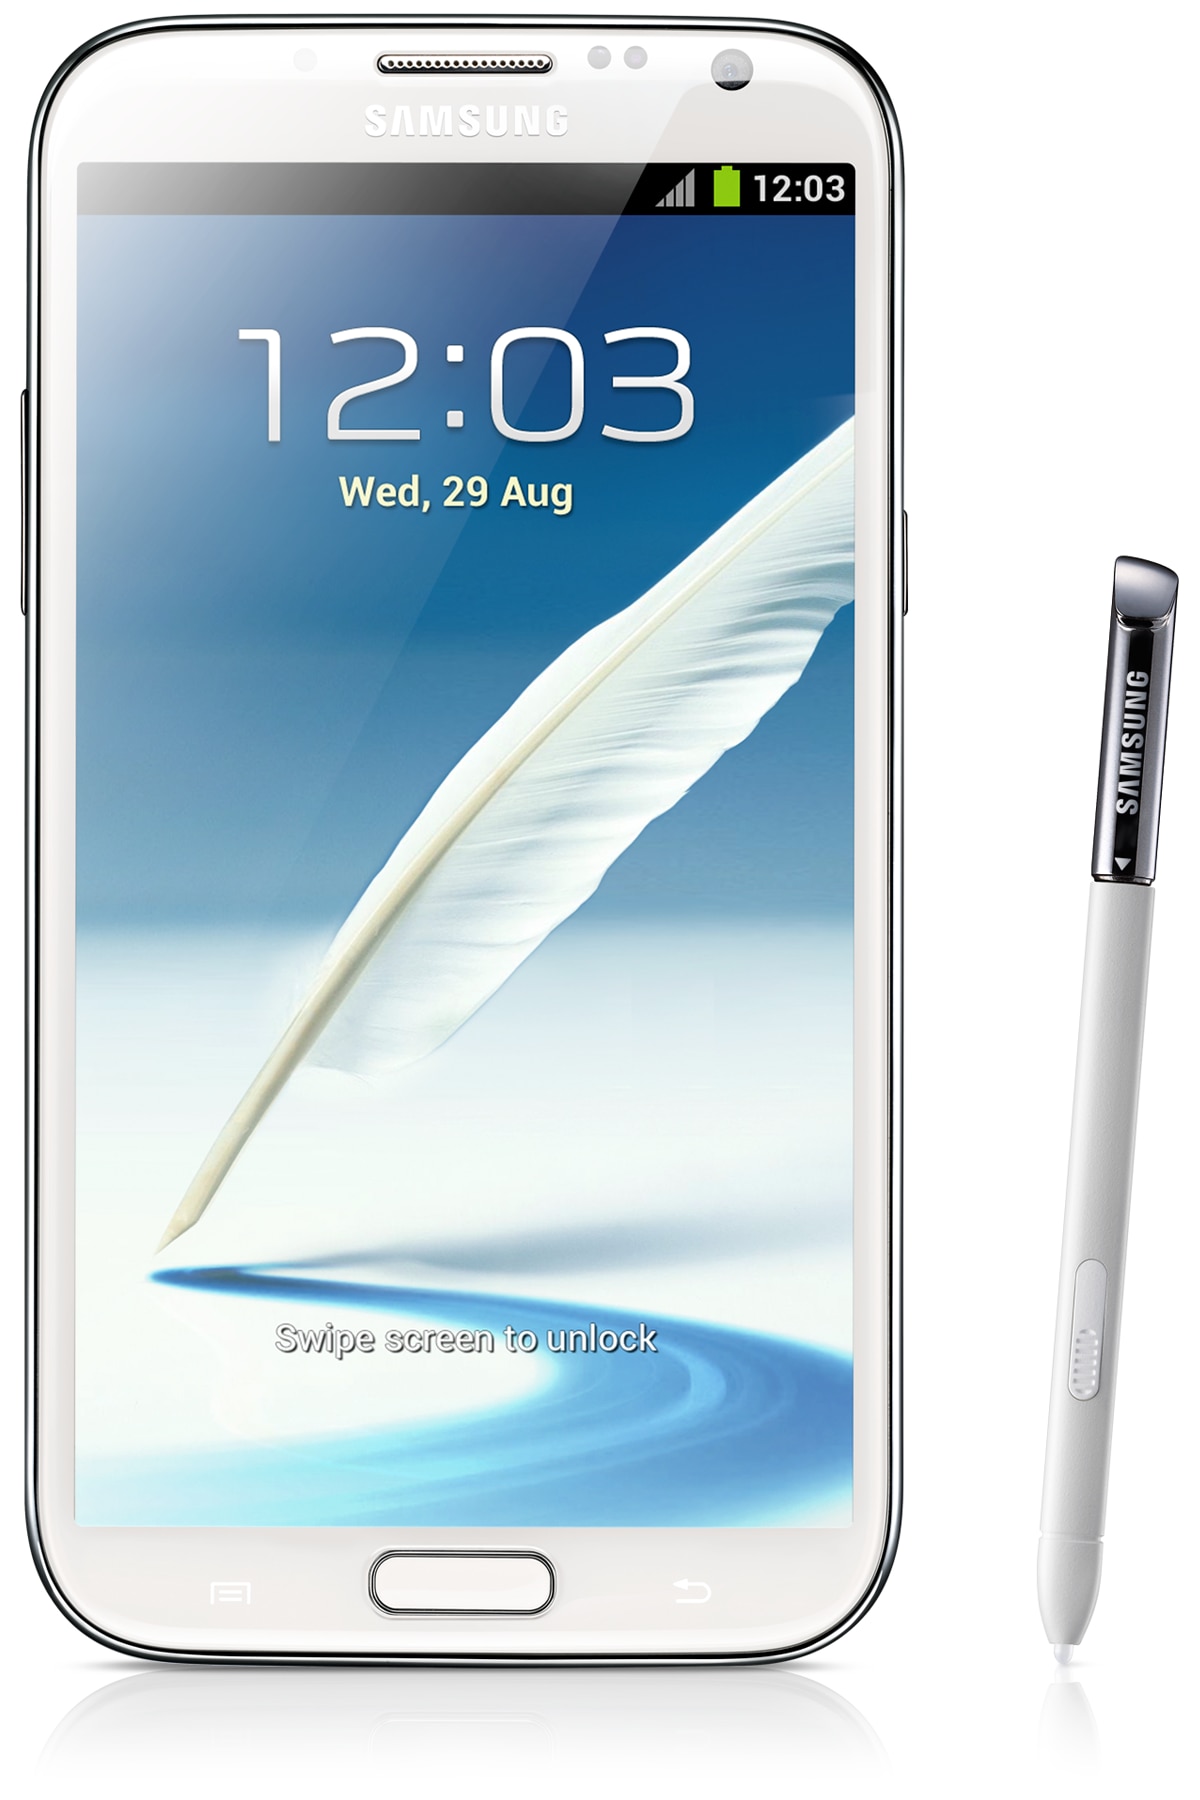 تعريب حصري  لجوال    Samsung Galaxy Note II GT-N7100 Ae_GT-N7100RWDXSG_001_Front_white?$L2-Gallery$